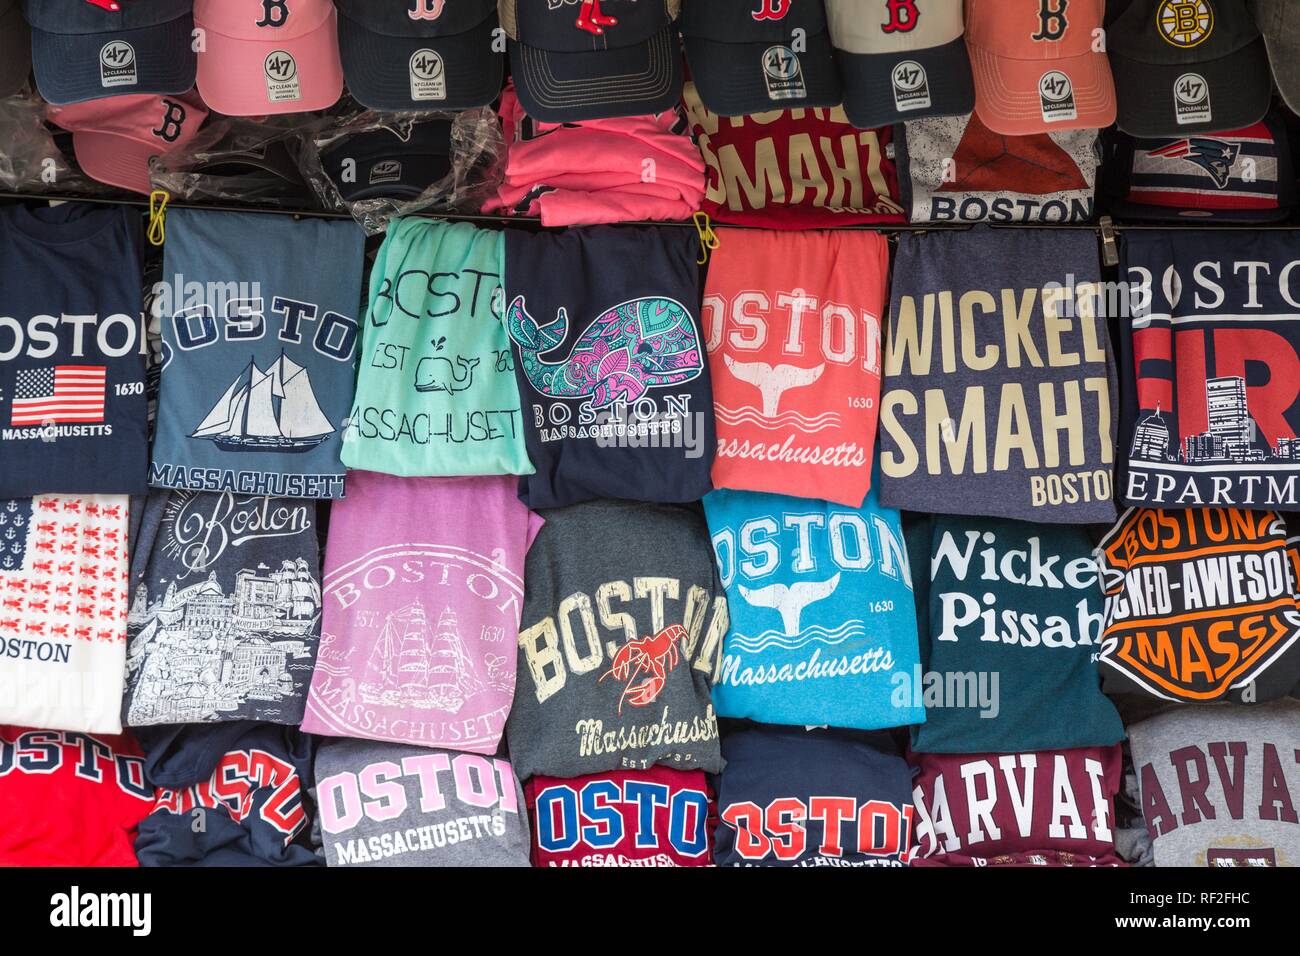 Boston chemises, T-shirts, stand de souvenirs, Boston, Massachusetts, USA Banque D'Images